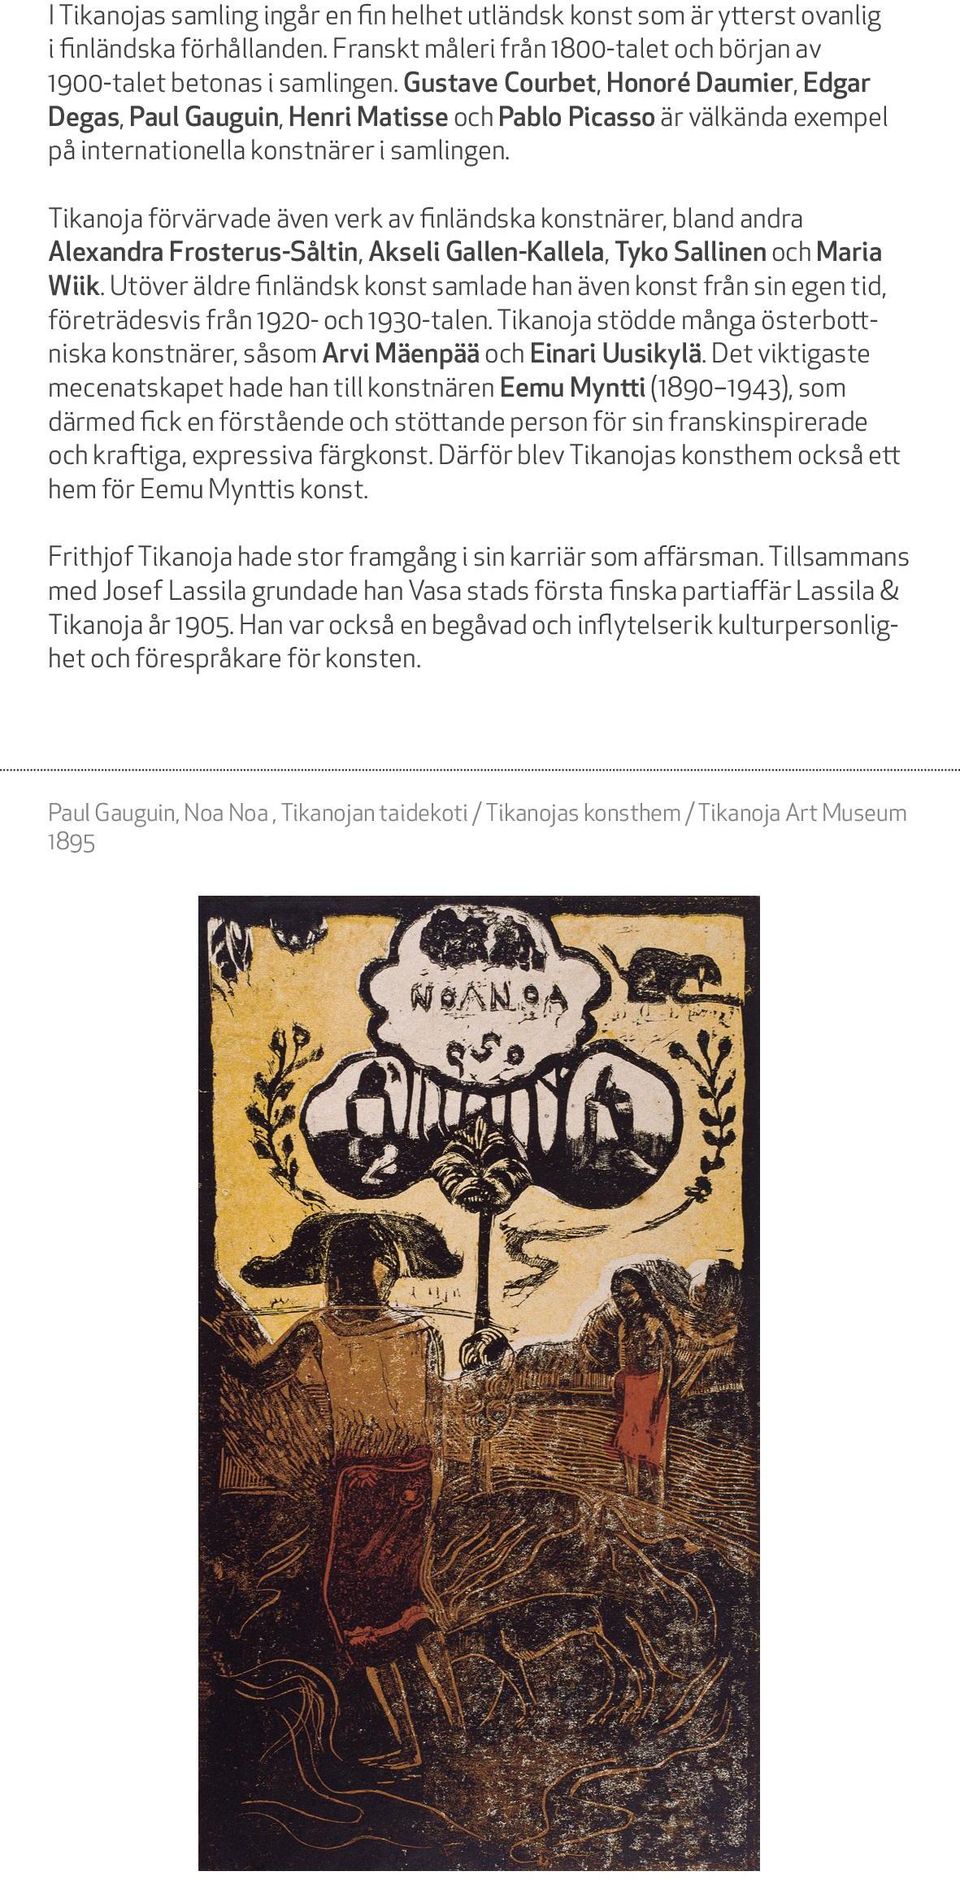 Tikanoja förvärvade även verk av finländska konstnärer, bland andra Alexandra Frosterus-Såltin, Akseli Gallen-Kallela, Tyko Sallinen och Maria Wiik.